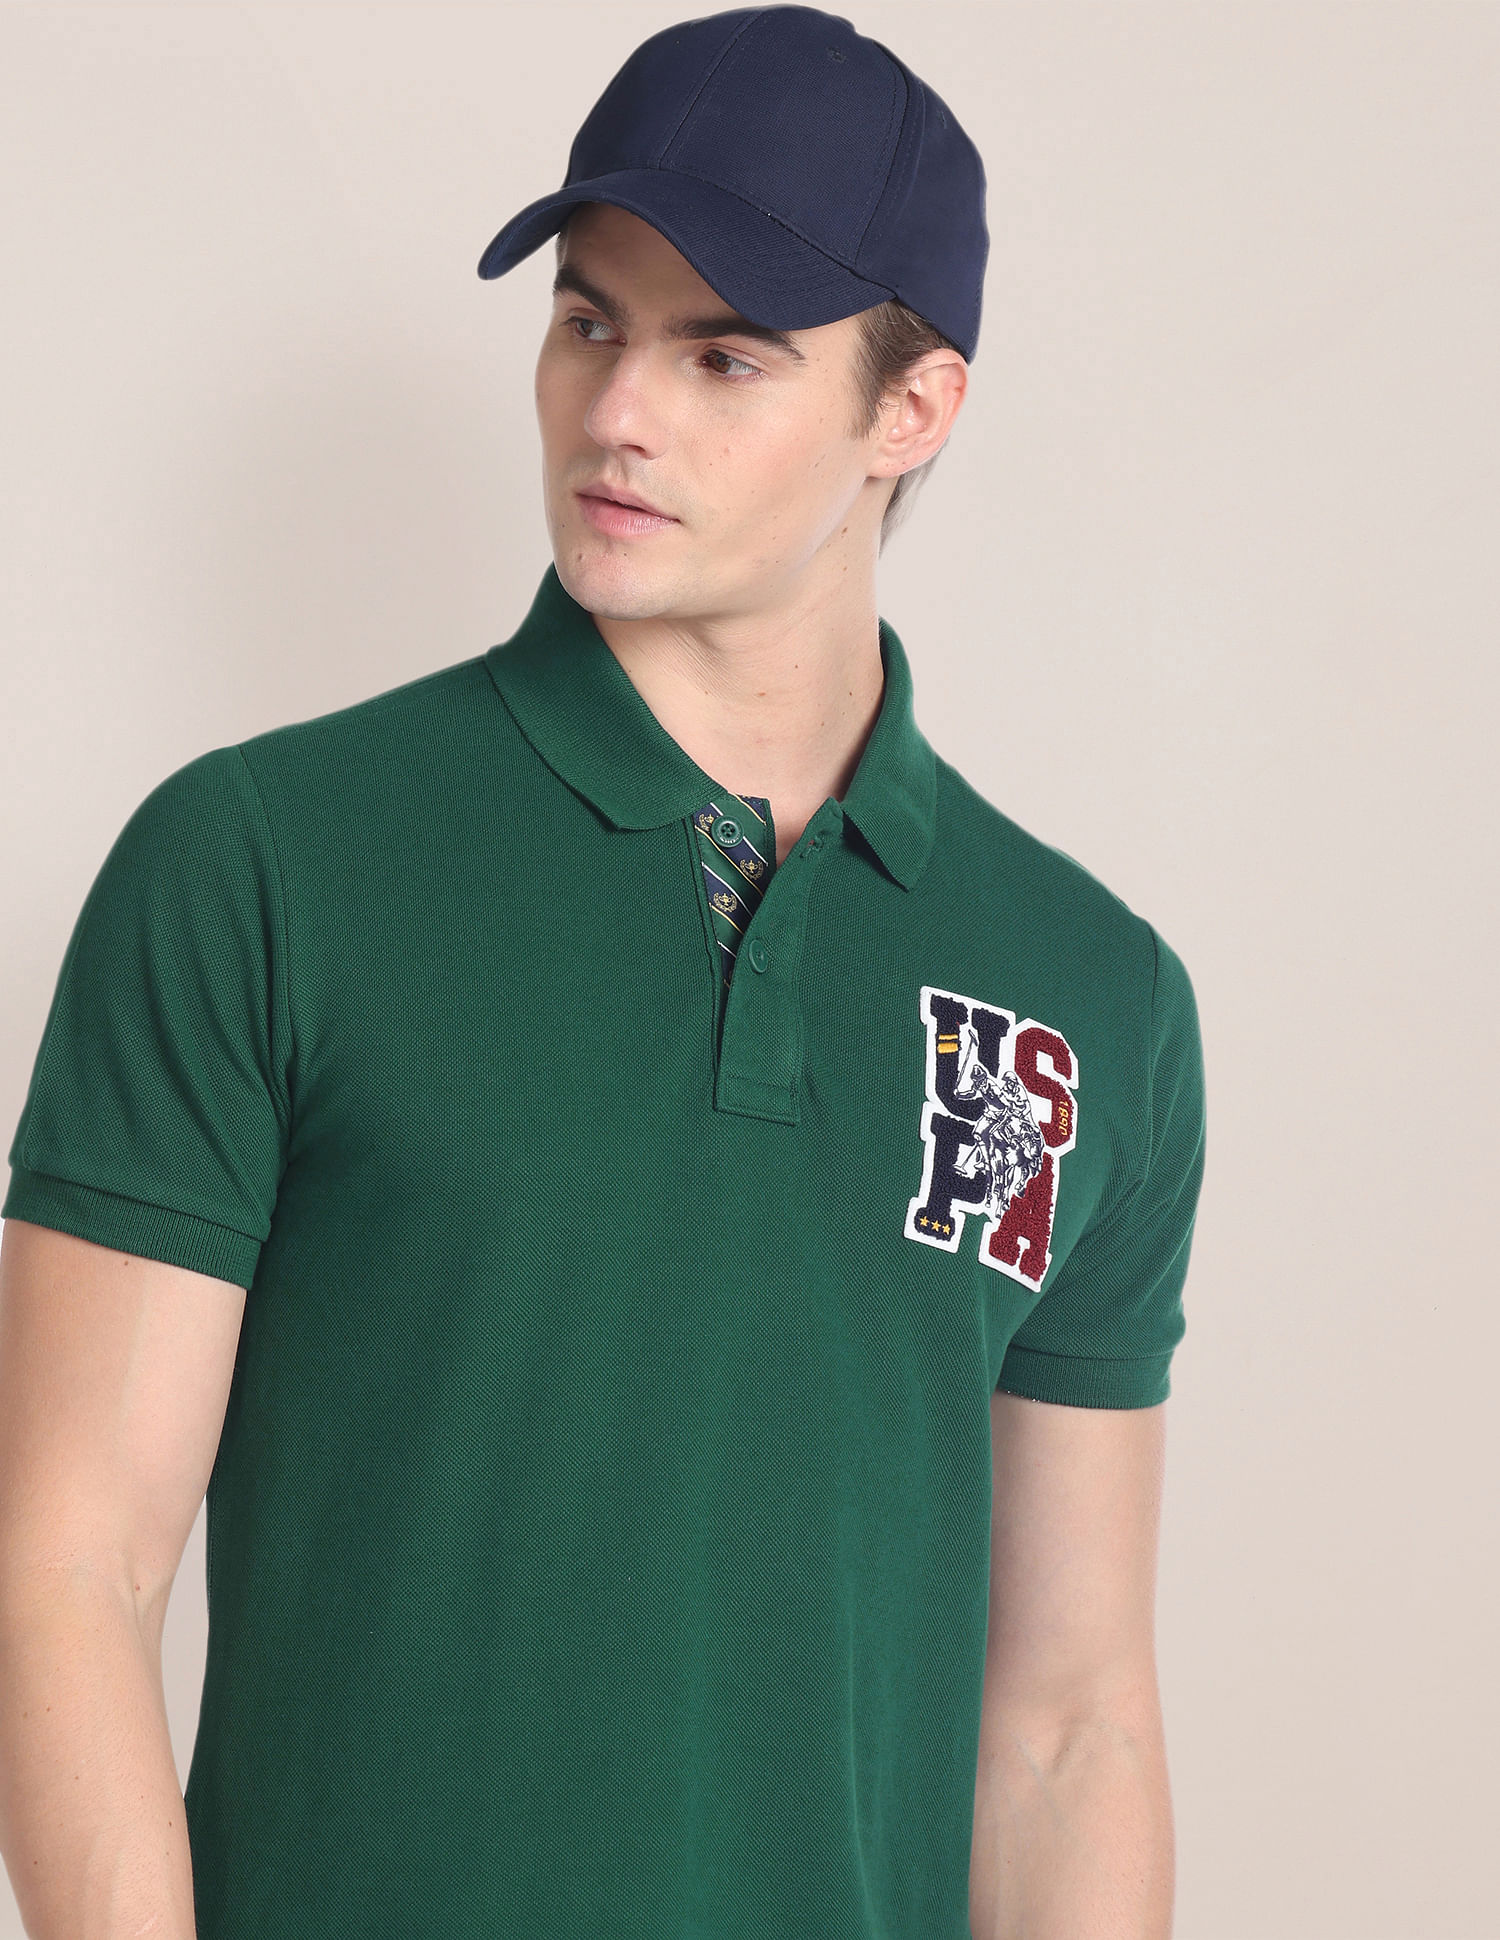 U.S. Polo Assn. Cotton Solid Polo Shirt, Green (XL)